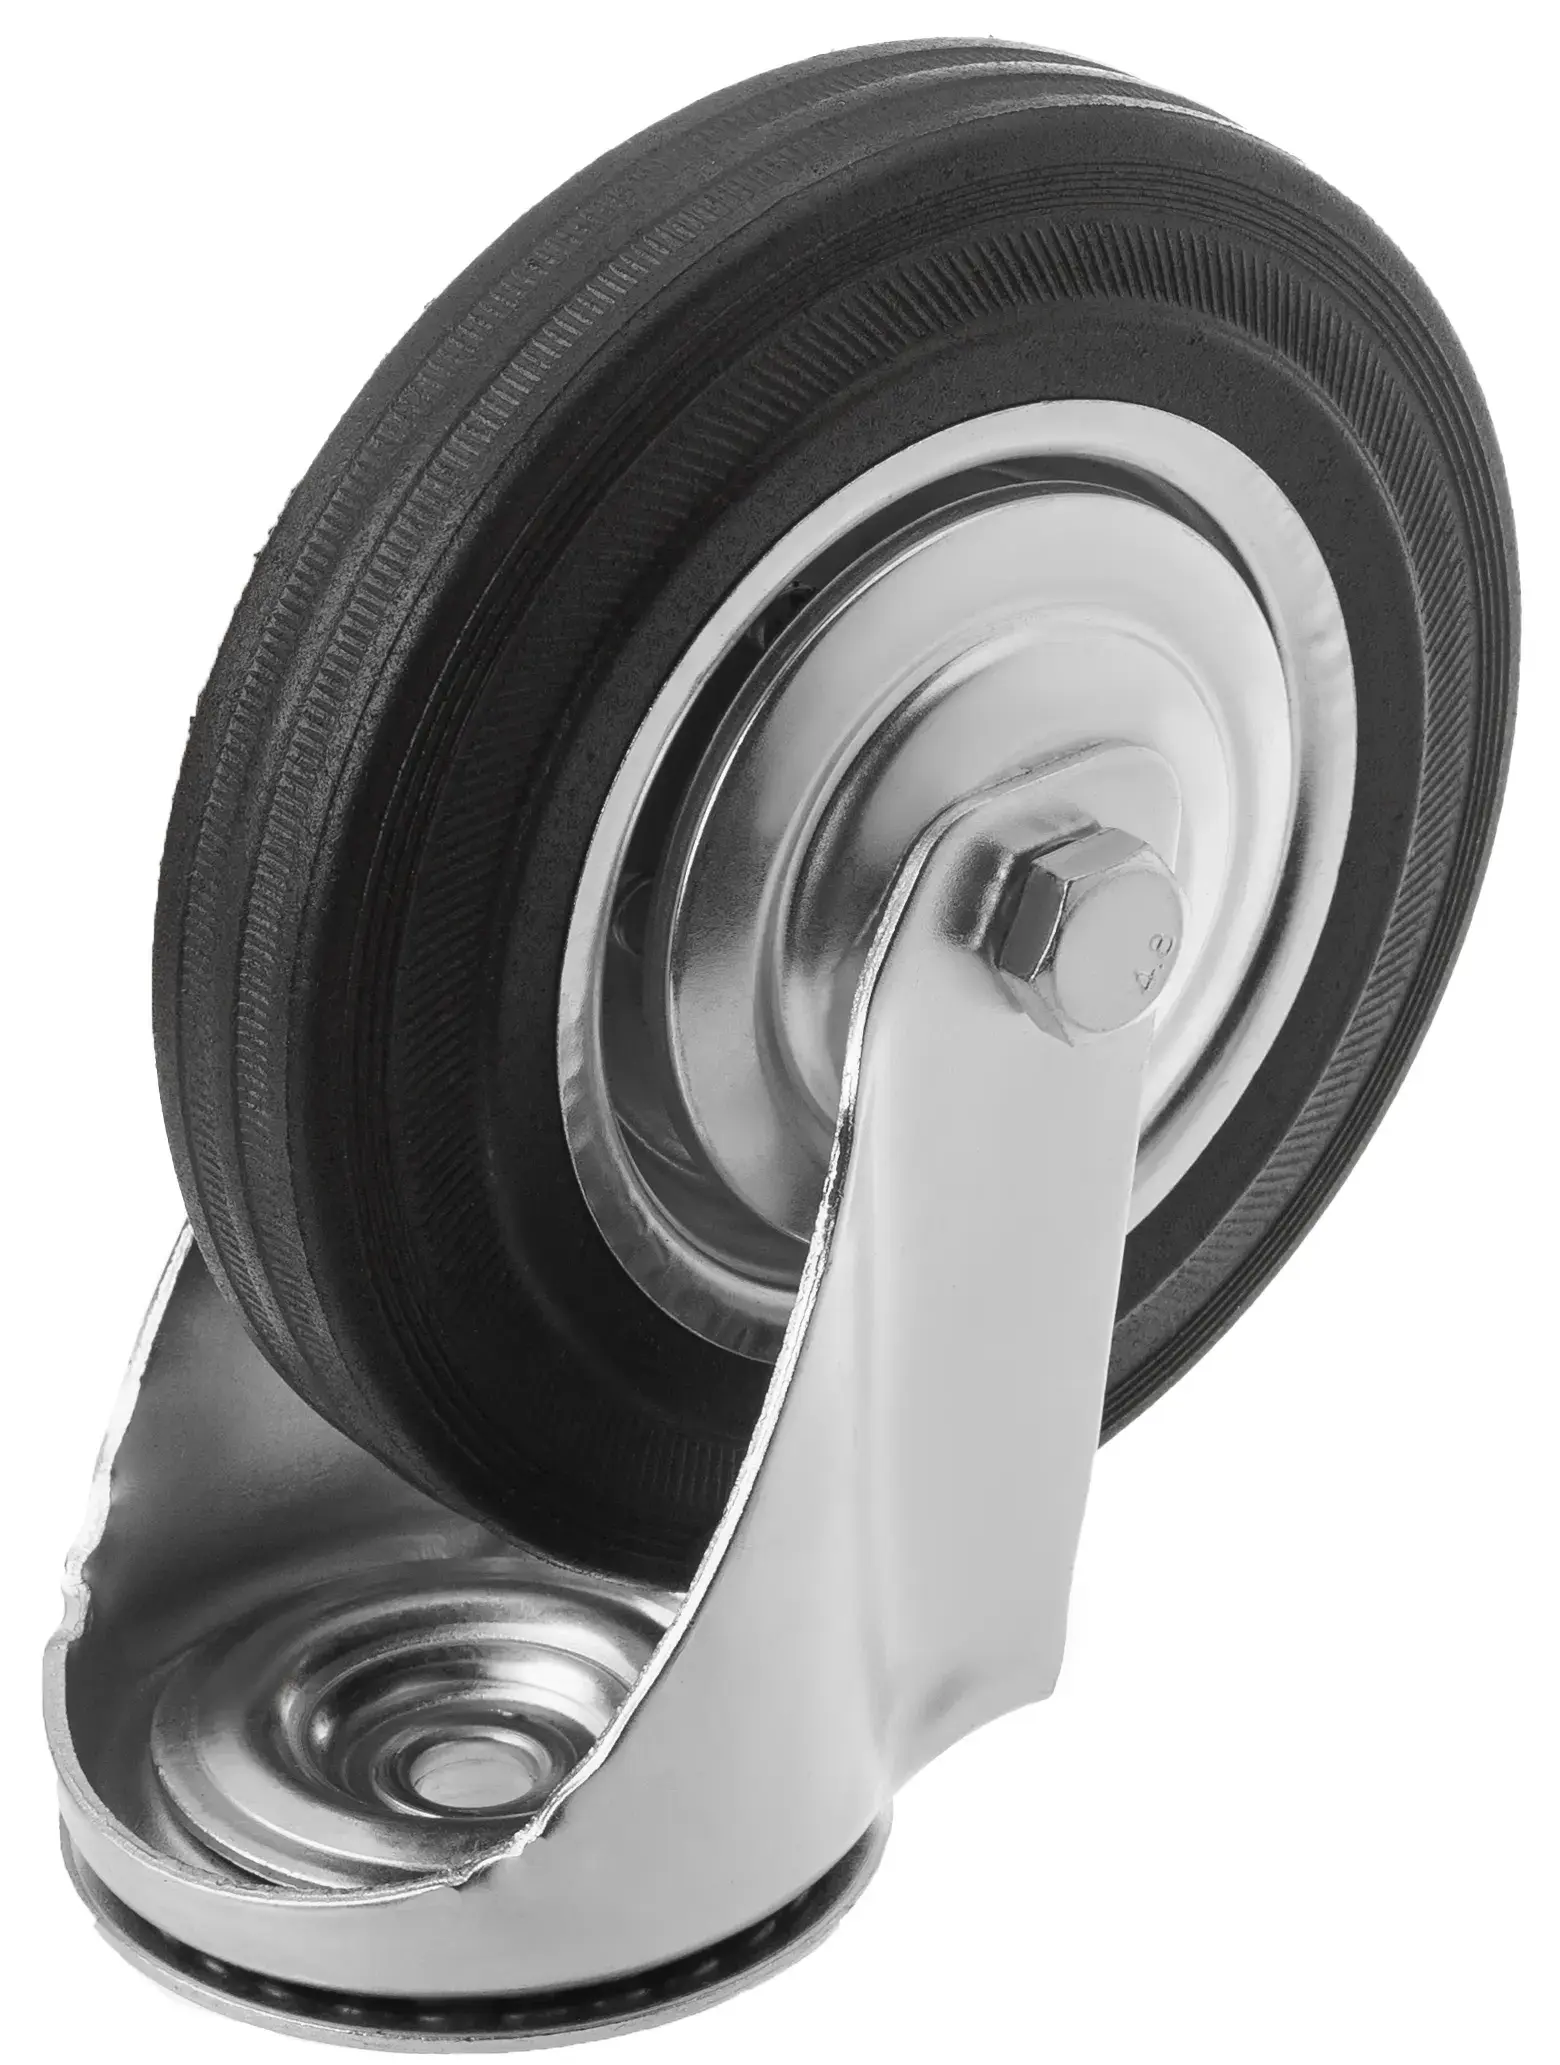 Промышленное колесо, диаметр 160мм, крепление под болт 16 мм, поворотная опора, черная резина, роликовый подшипник - SCh 63 (16)